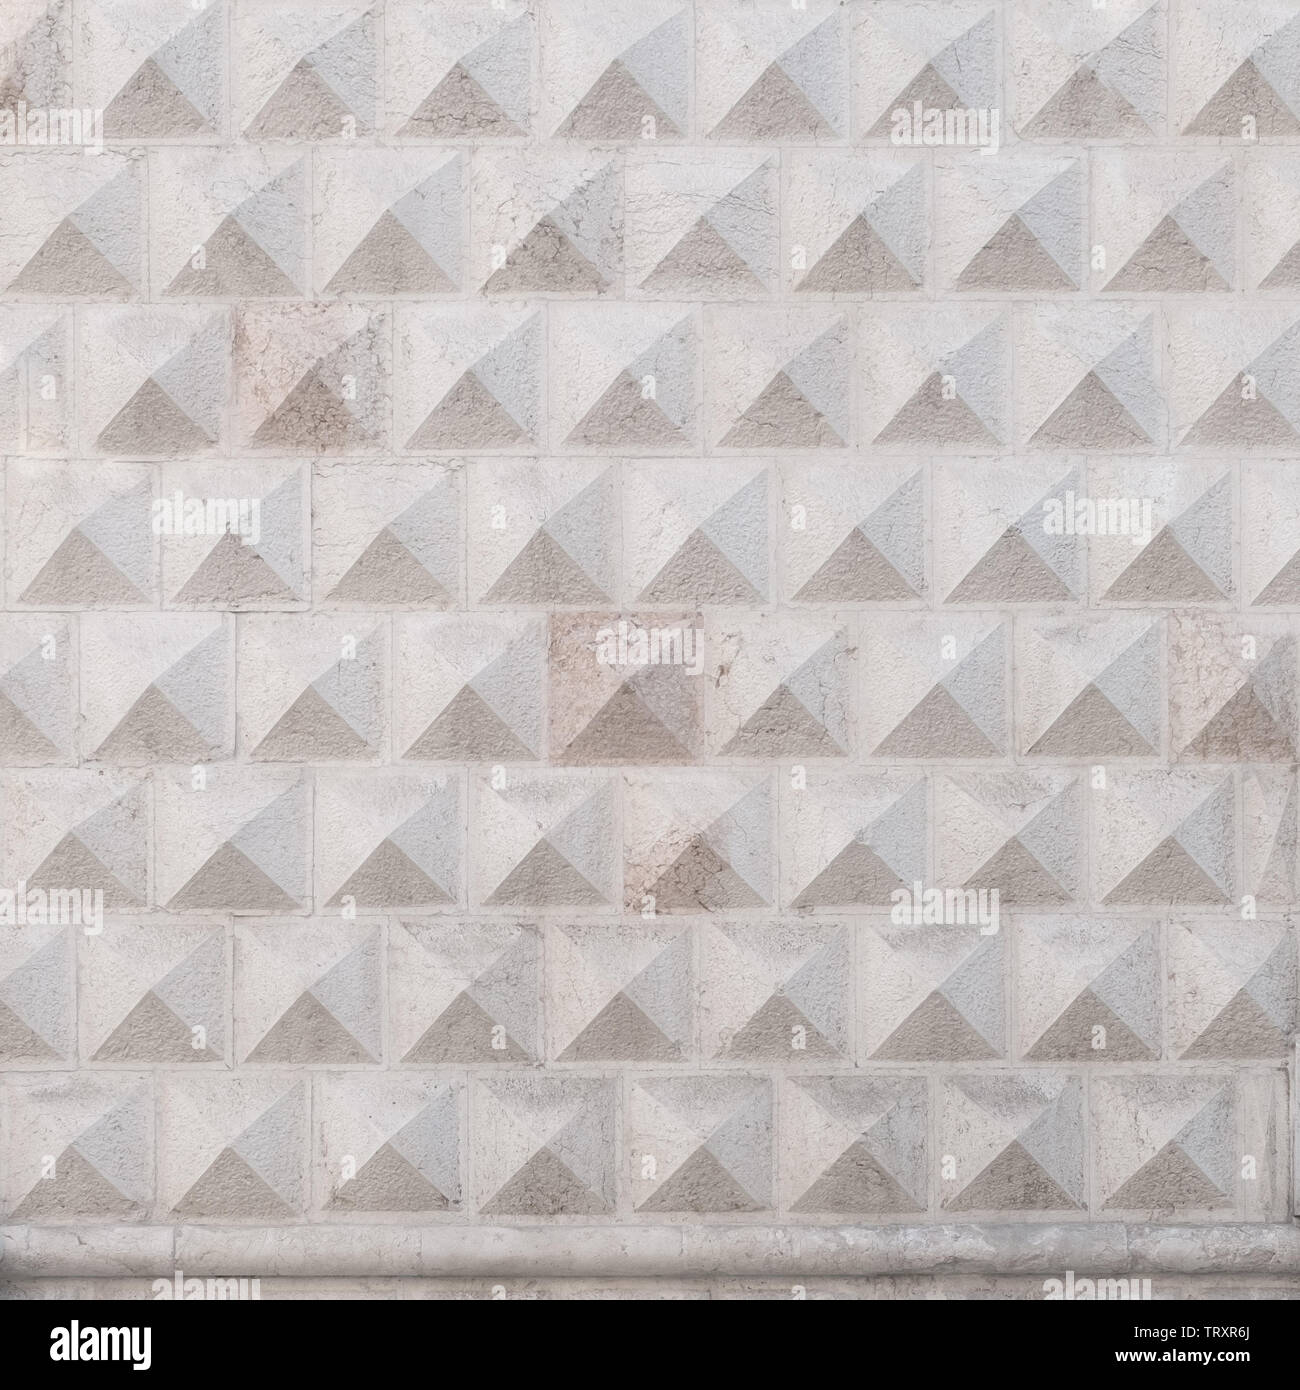 Diamanti pietre tagliate a copertura del centro storico e il famoso Palazzo dei Diamanti (Diamond Palace); Ferrara, Italia. Foto Stock